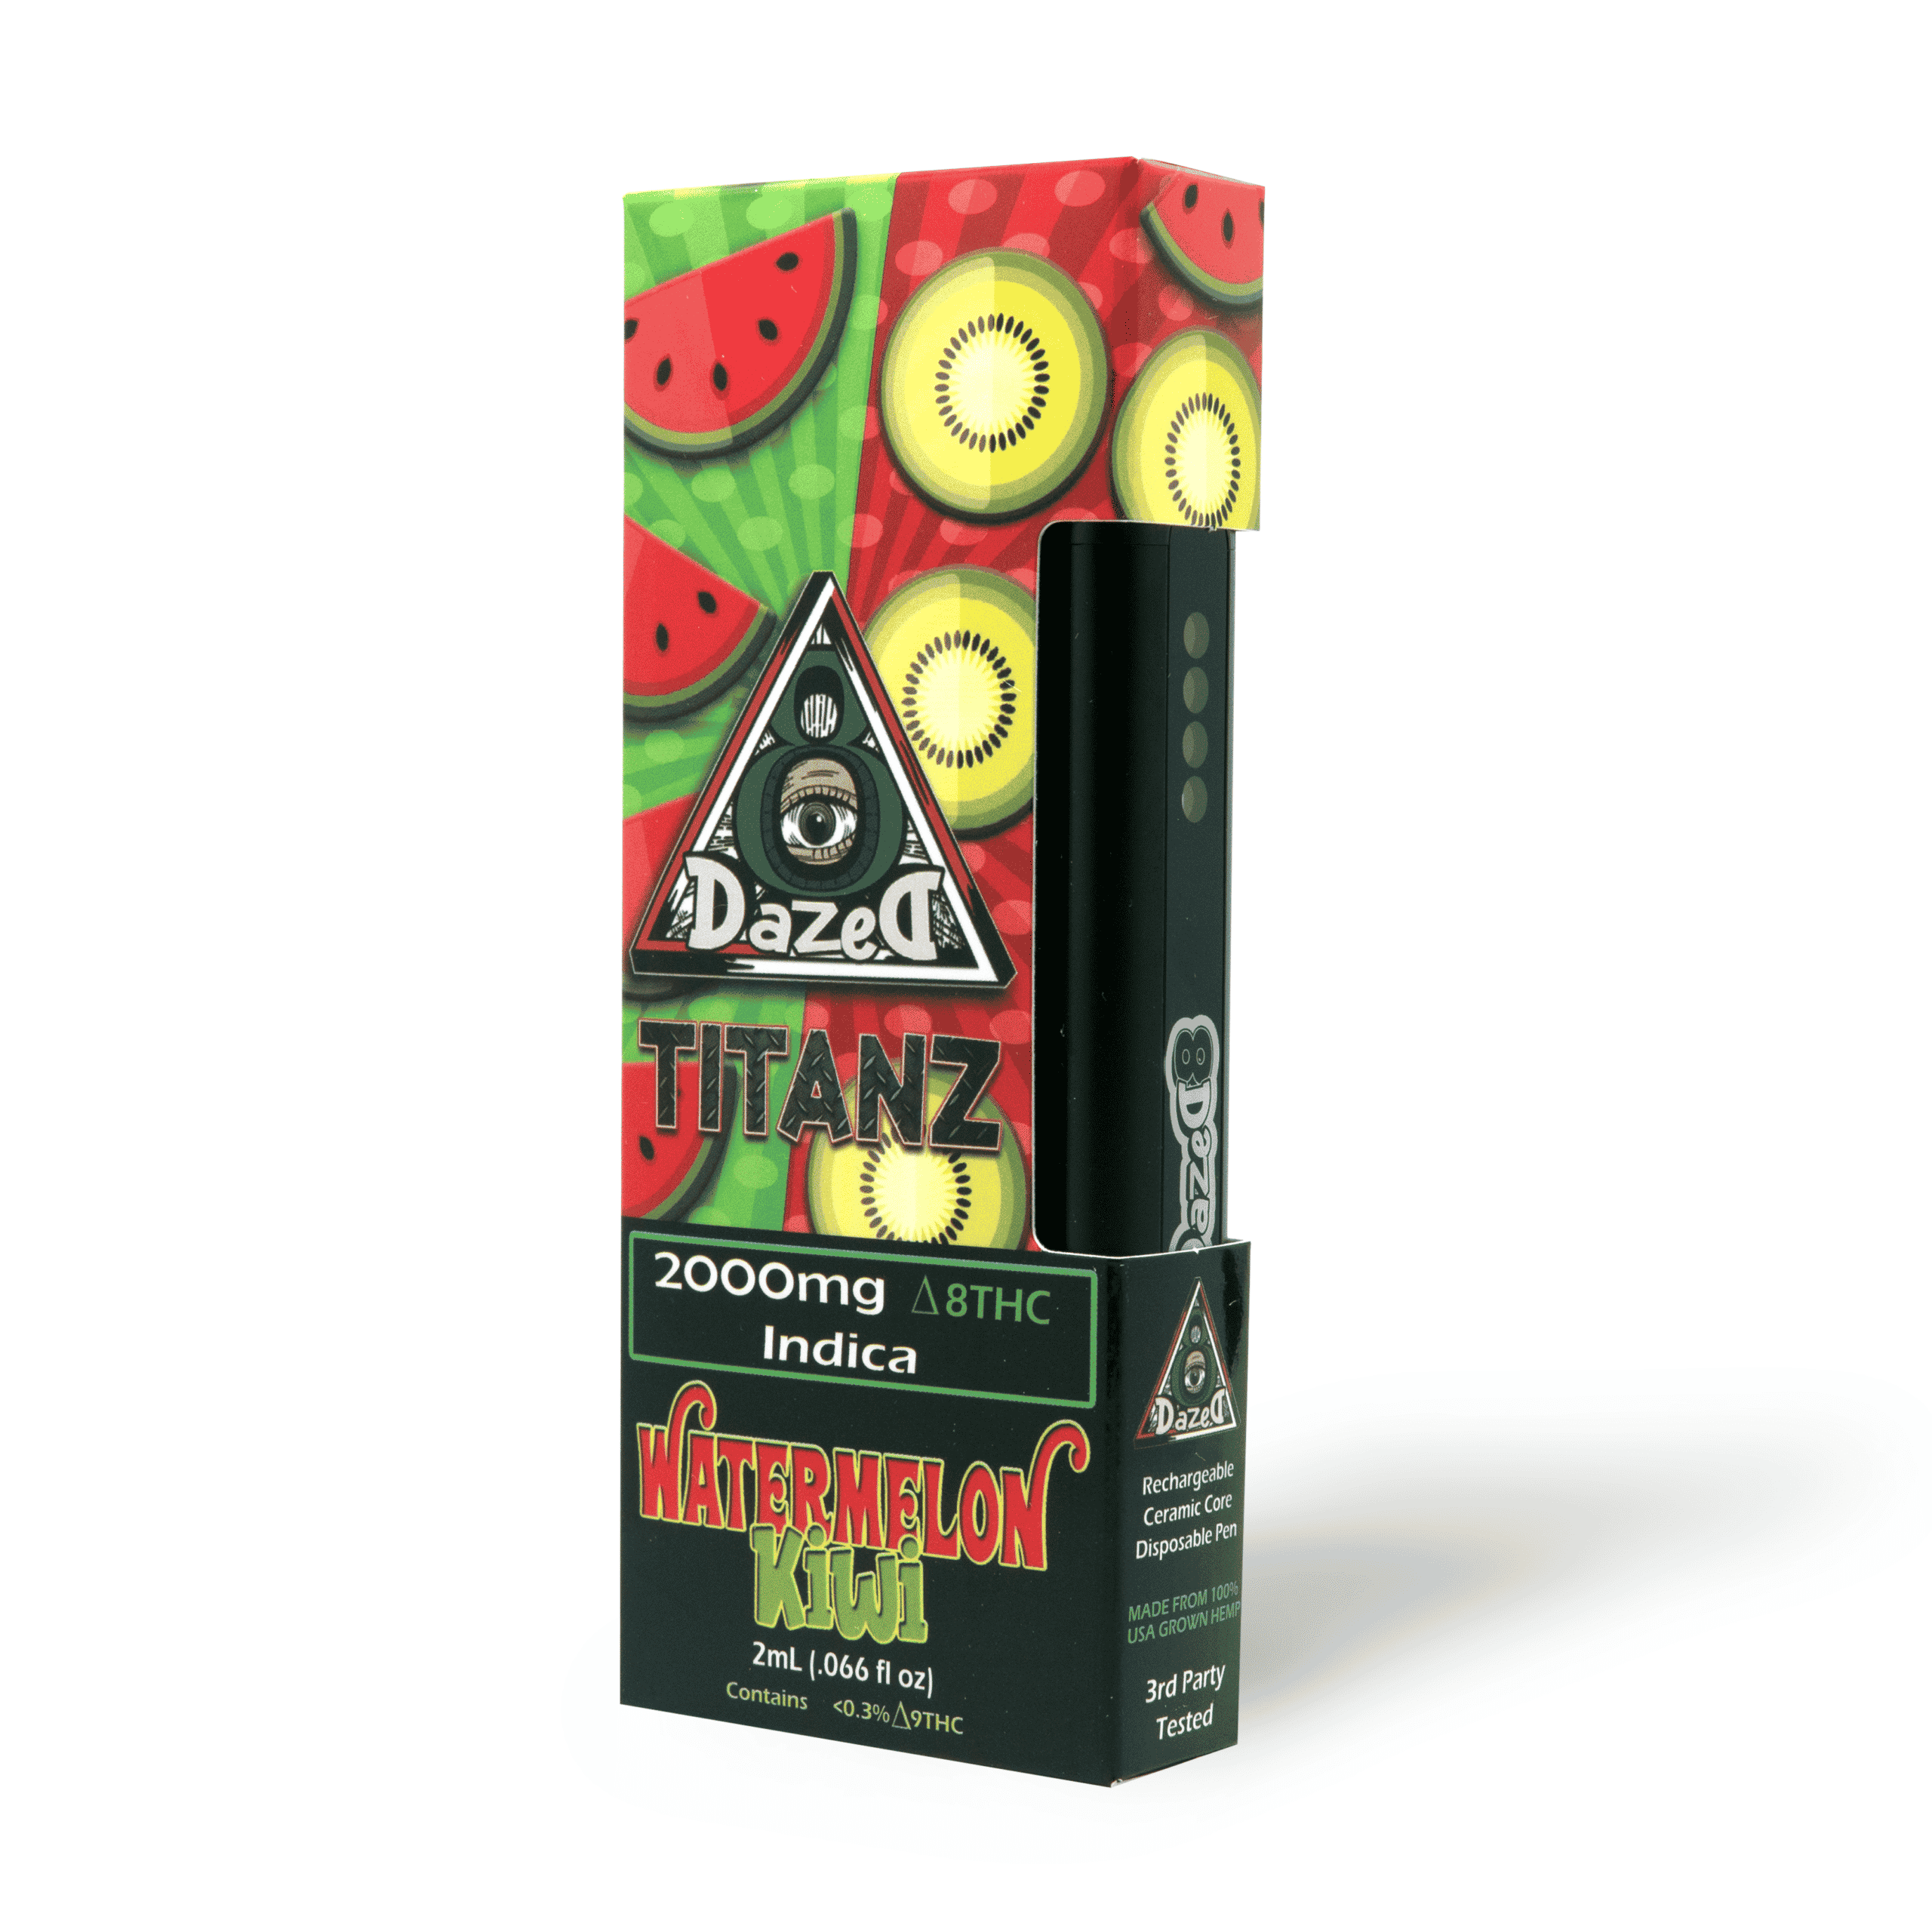 DazeD8 Watermelon Kiwi Delta 8 Disposable (2g) Best Price